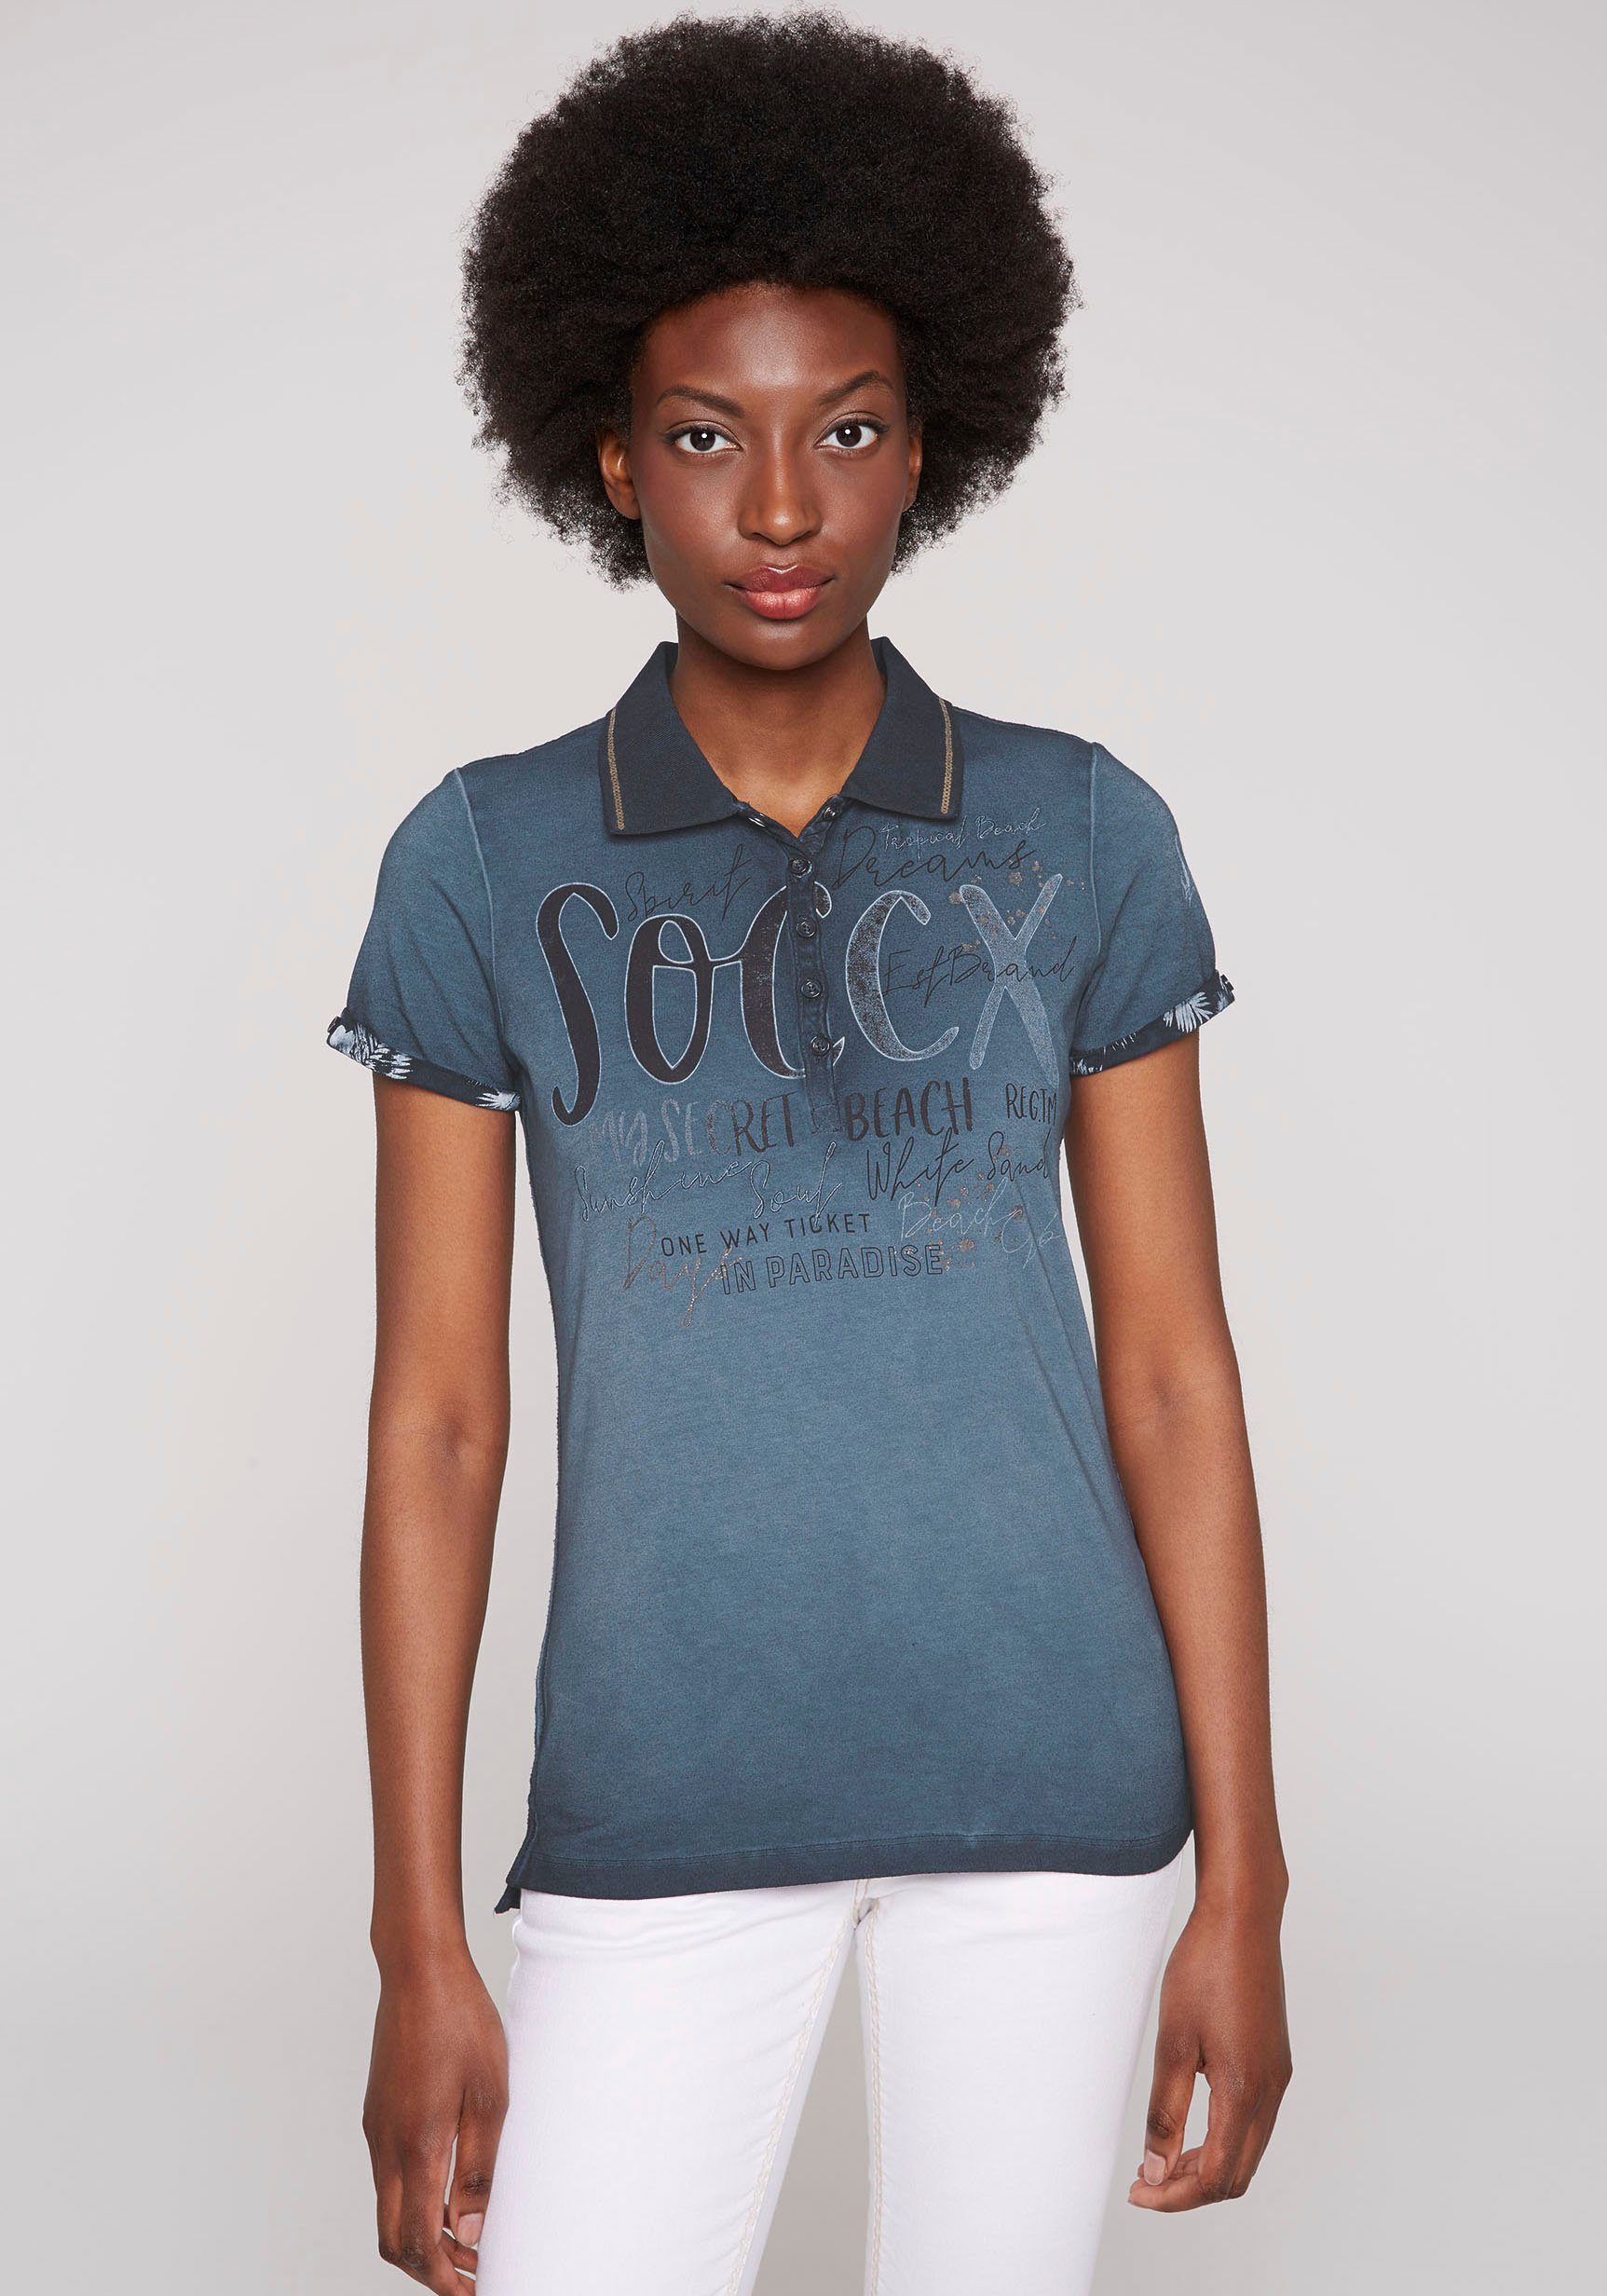 SOCCX Poloshirt mit dekorativen Ärmelaufschlägen | OTTO